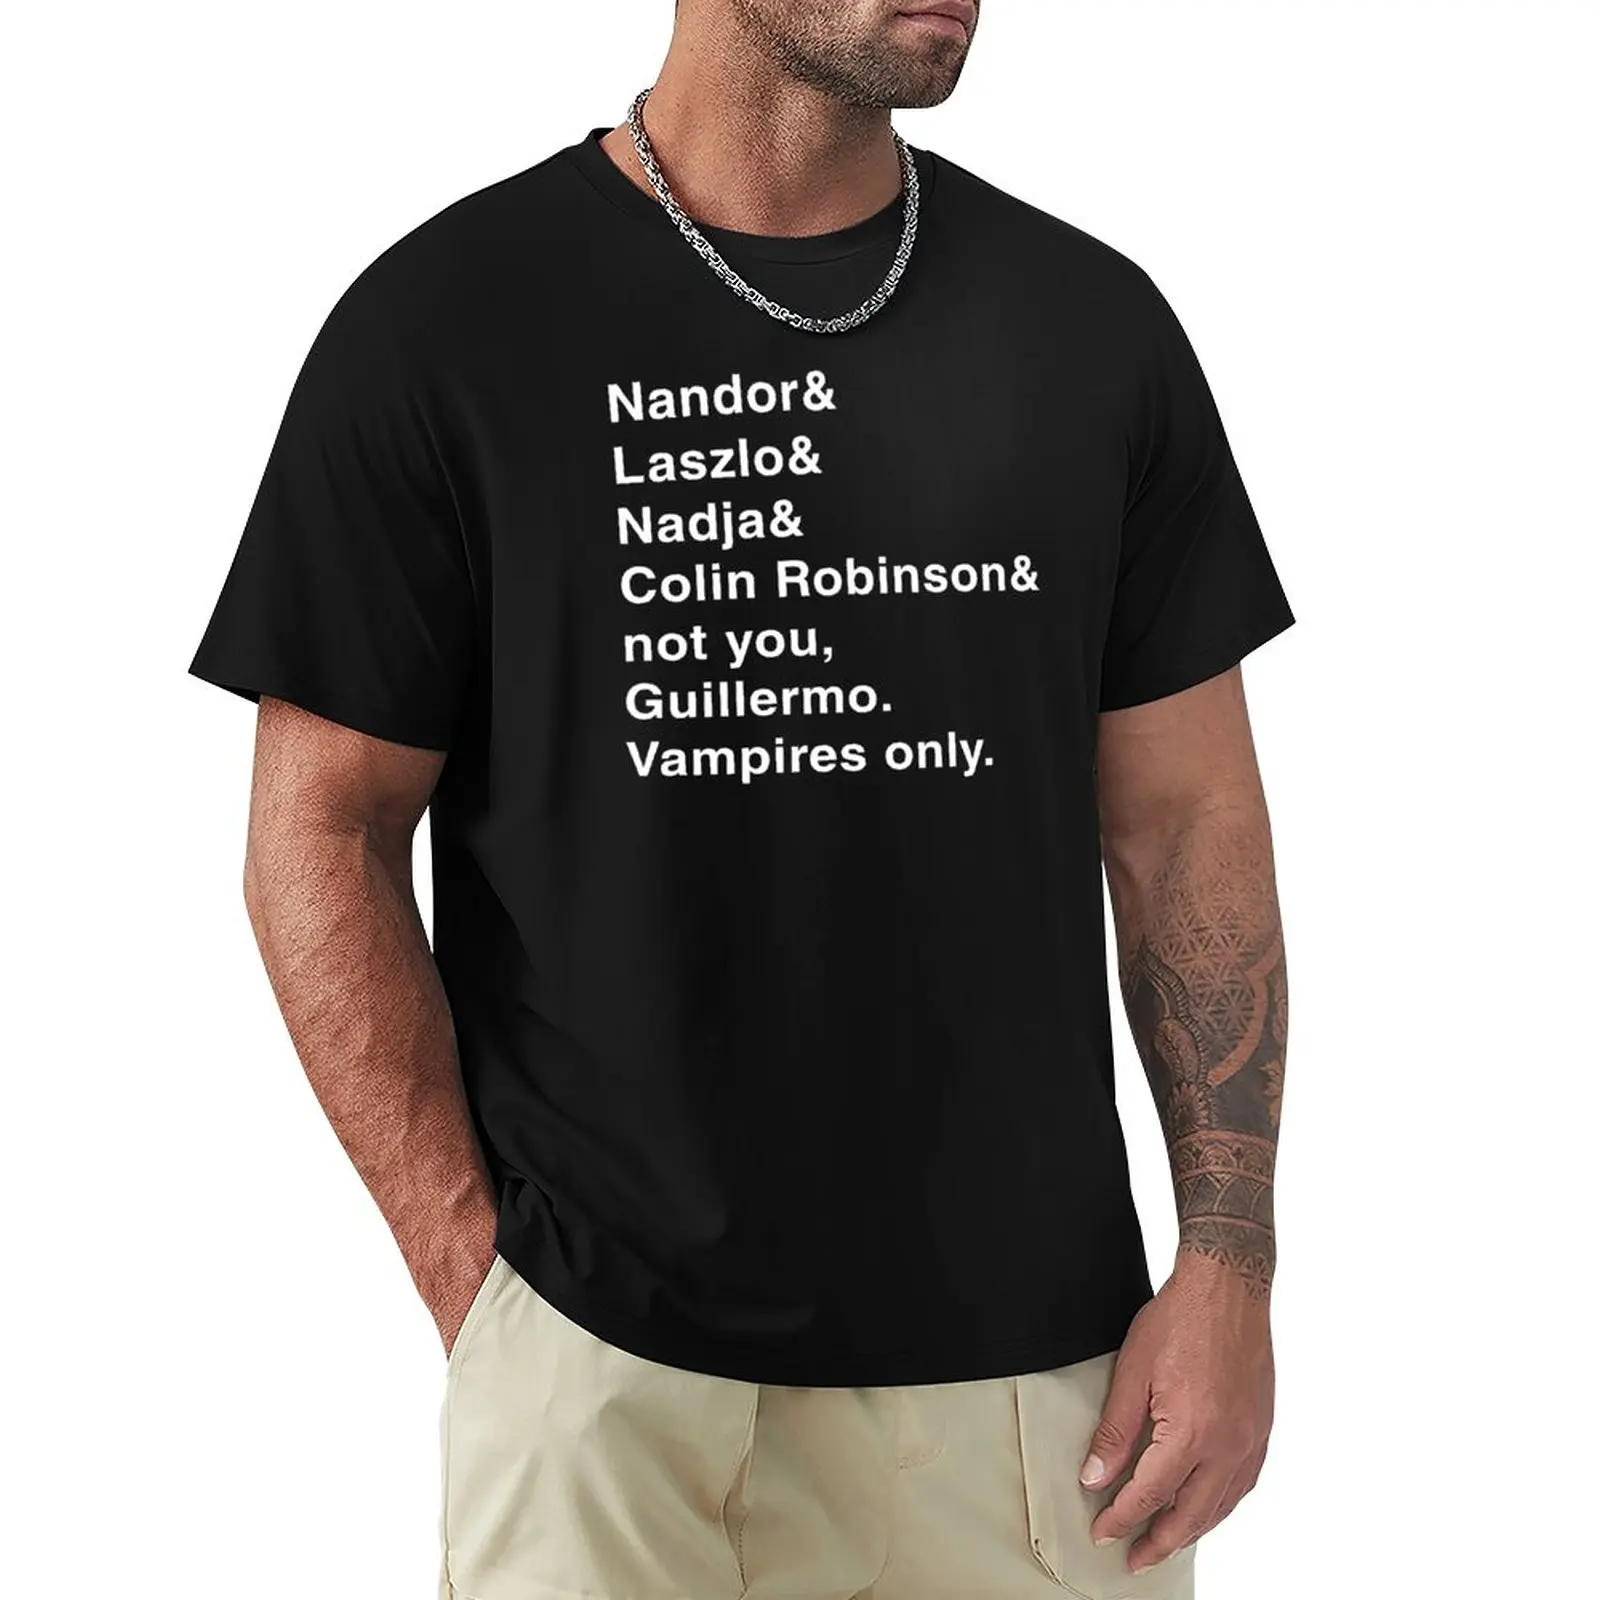 Футболка с вампирами Стейтен-Айленда, черные футболки, быстросохнущая футболка, футболки с аниме больших размеров, мужские футболки с графическим рисунком.